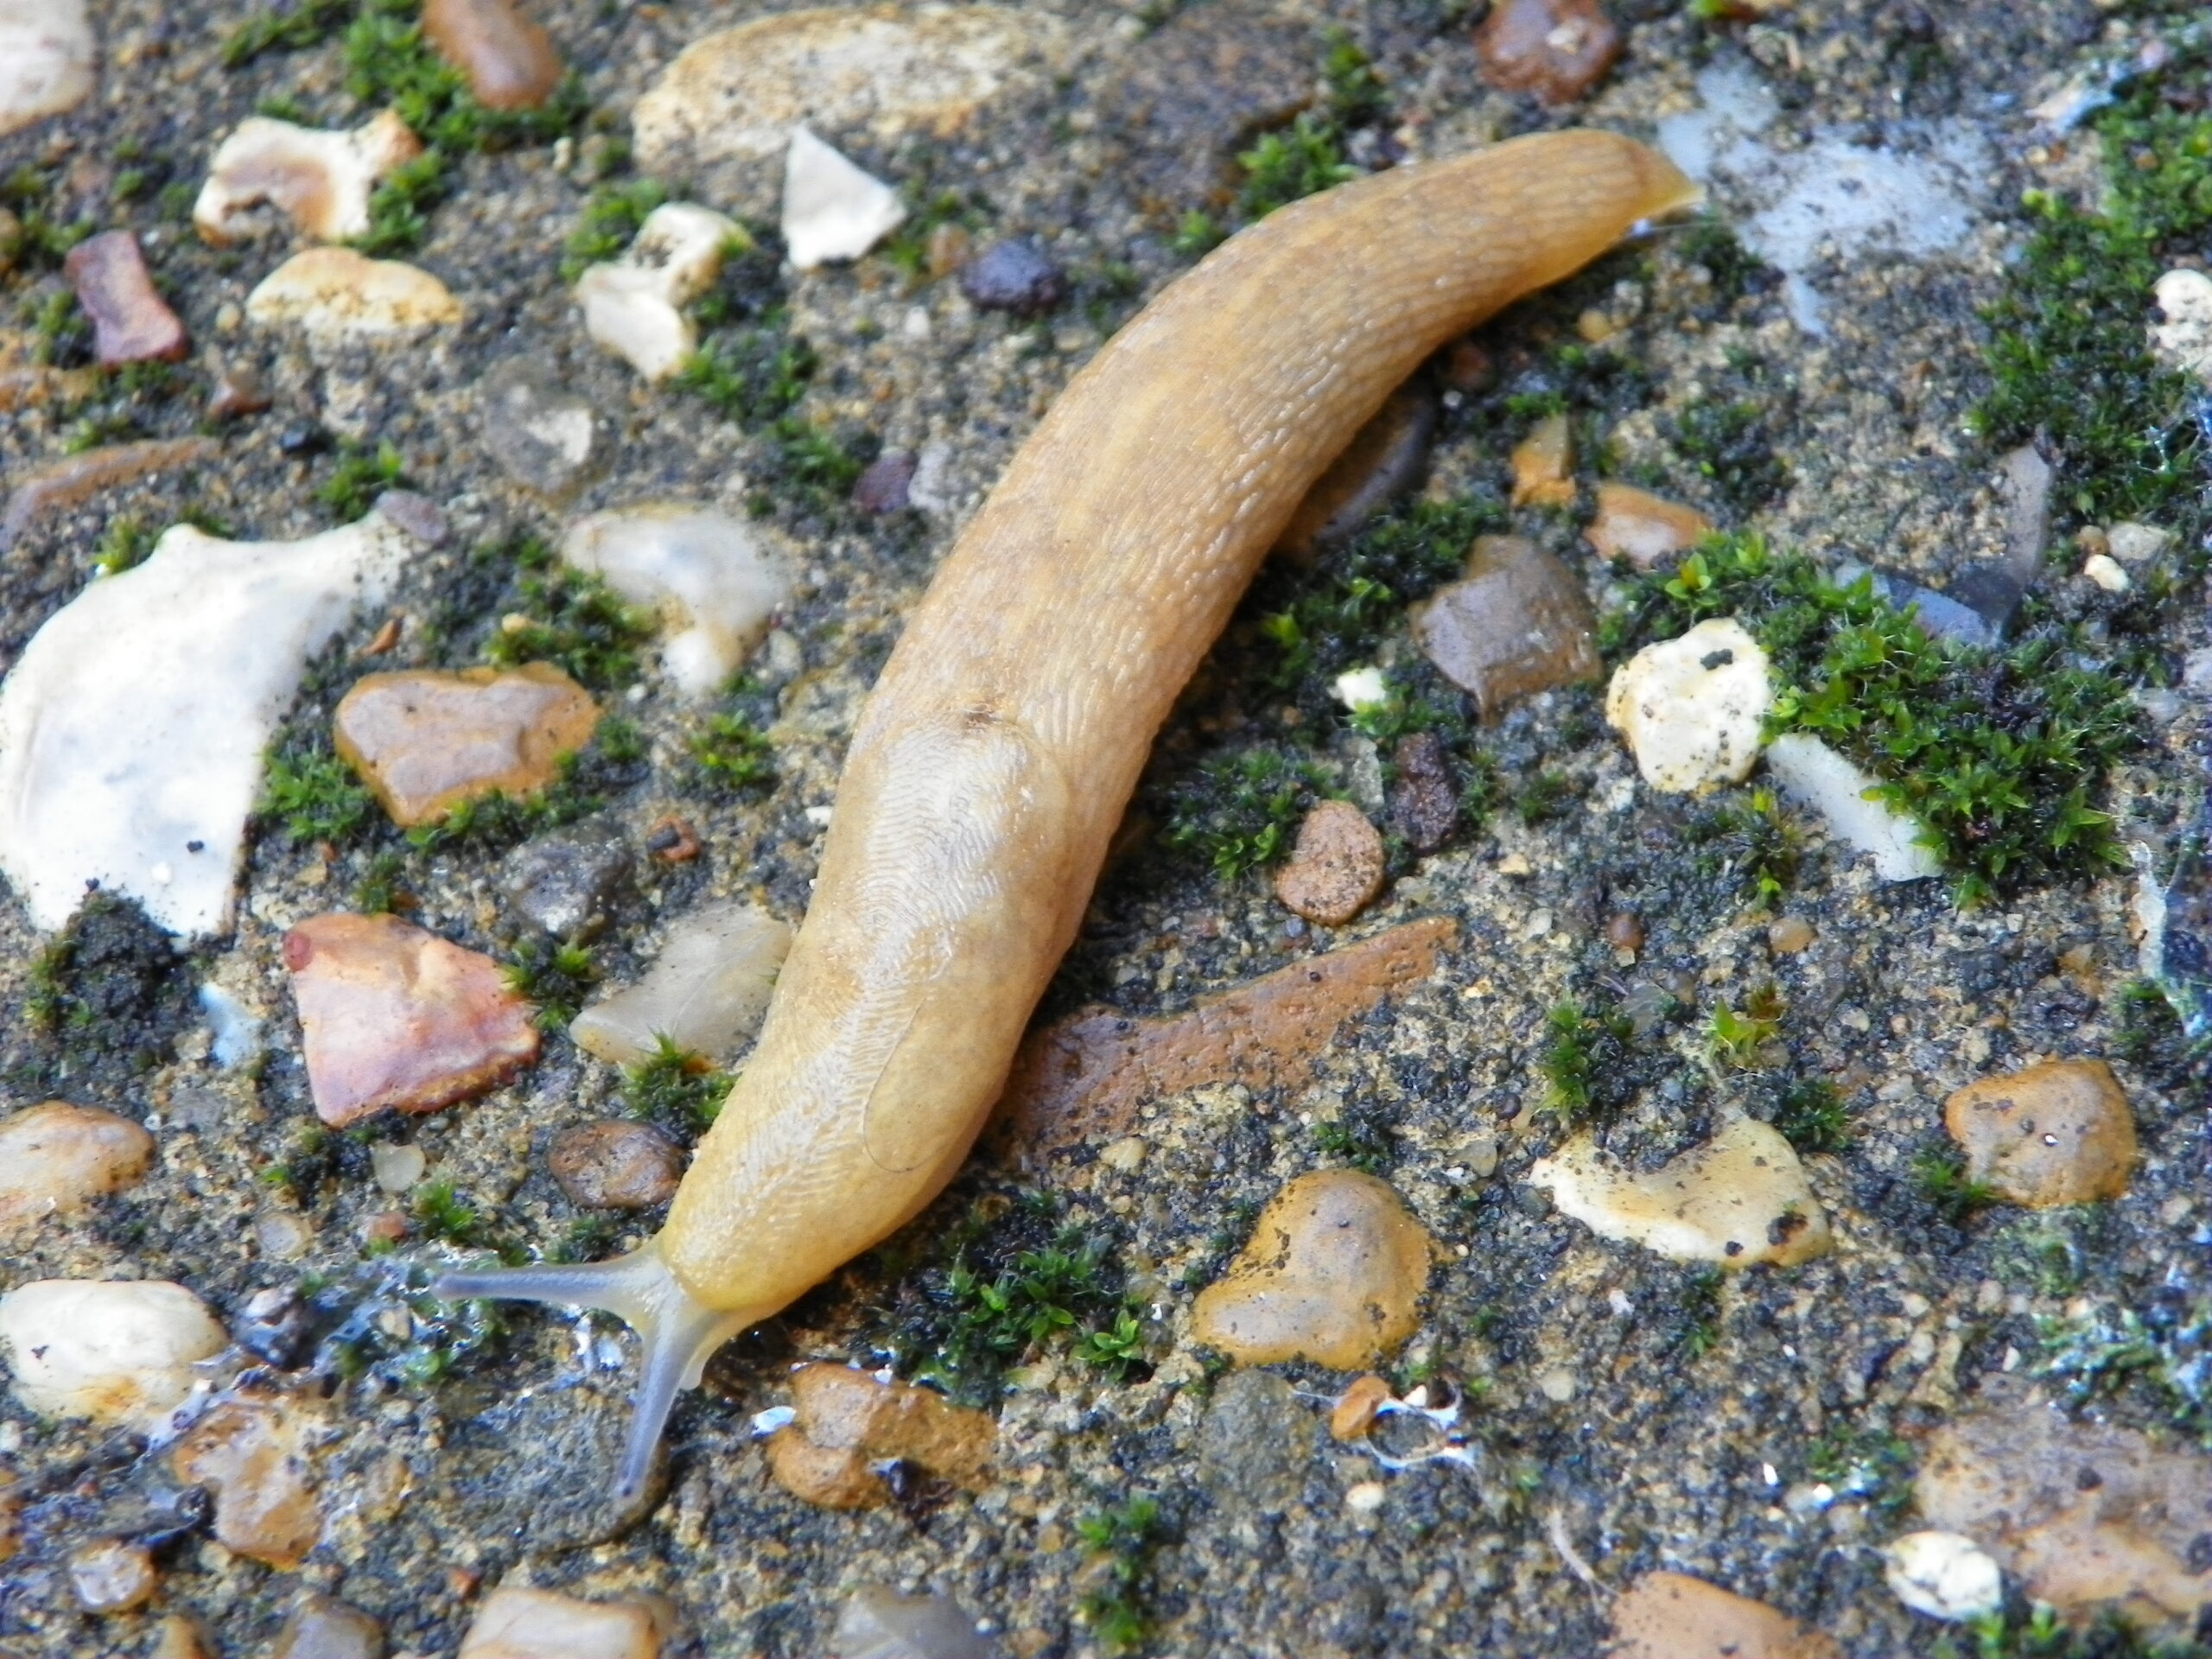 Yellow Slug (Limax flavus) in a back garden.